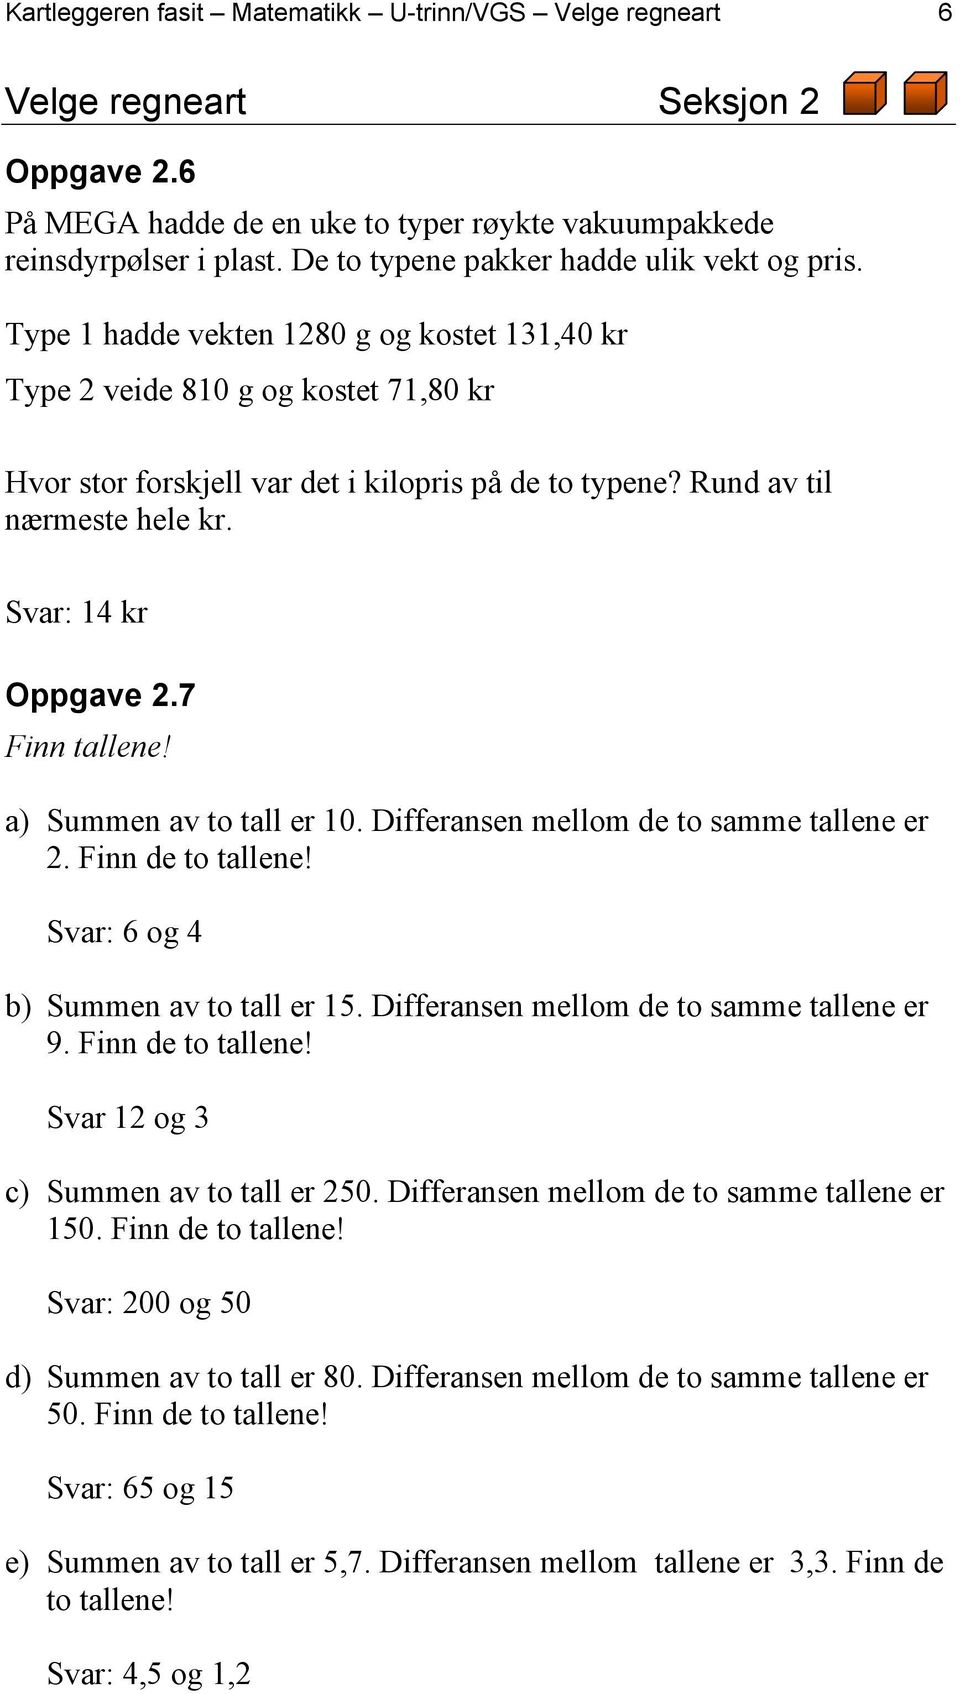 Rund av til nærmeste hele kr. Svar: 14 kr Oppgave 2.7 Finn tallene! a) Summen av to tall er 10. Differansen mellom de to samme tallene er 2. Finn de to tallene!